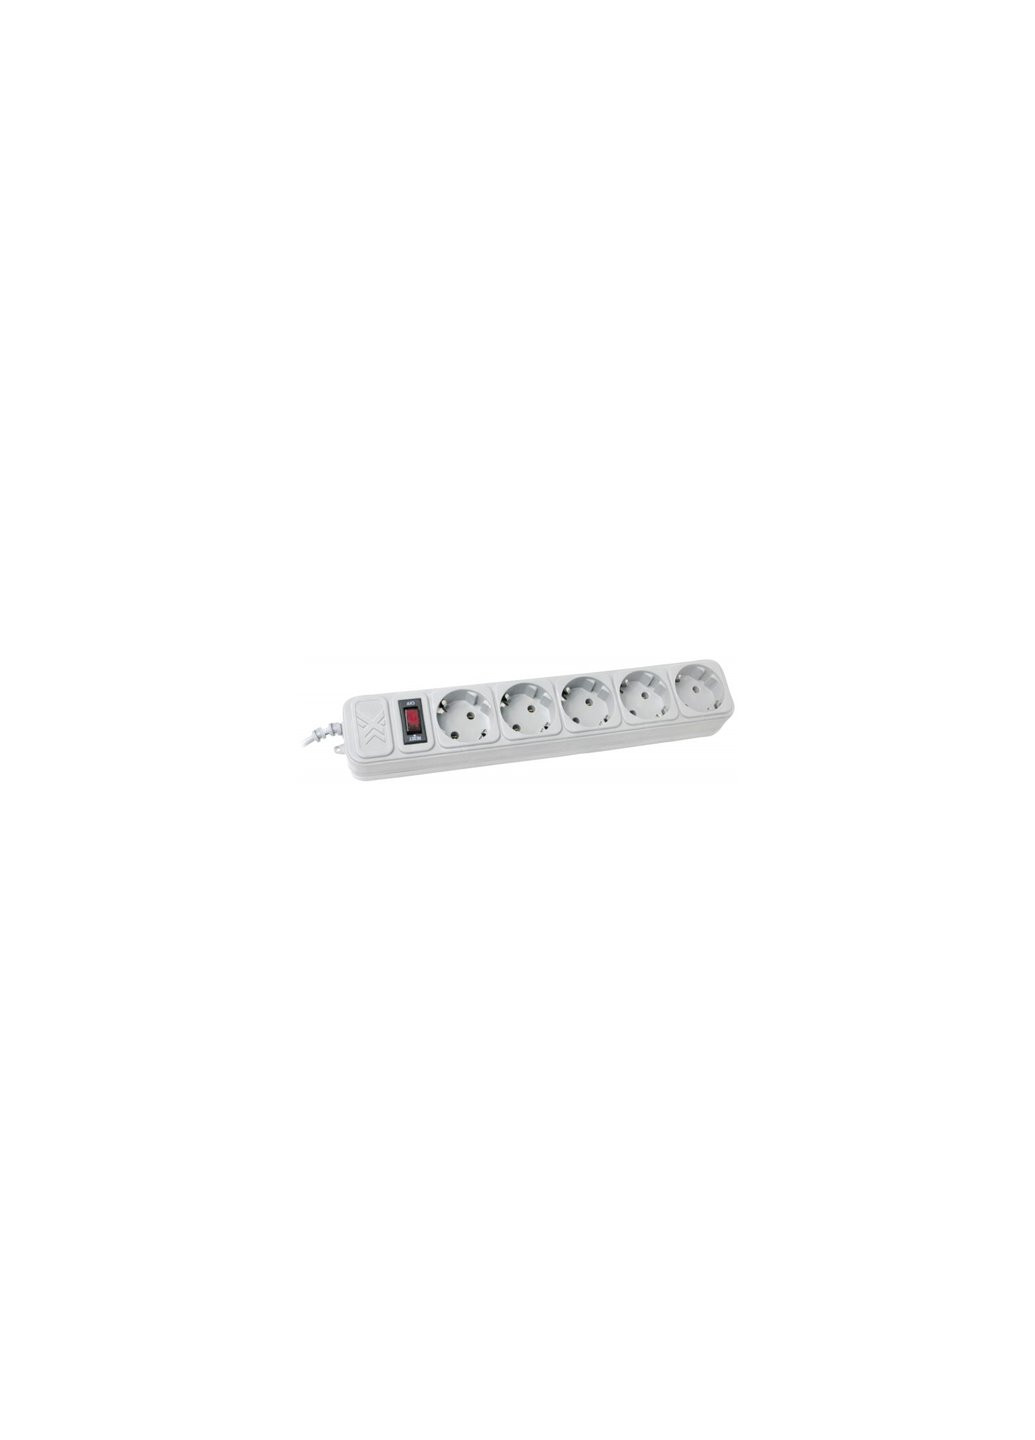 Сетевой фильтр питания SPM5-G-15G grey, 4.5 м кабель, 5 розеток (SPM5-G-15G) Maxxter (257224356)